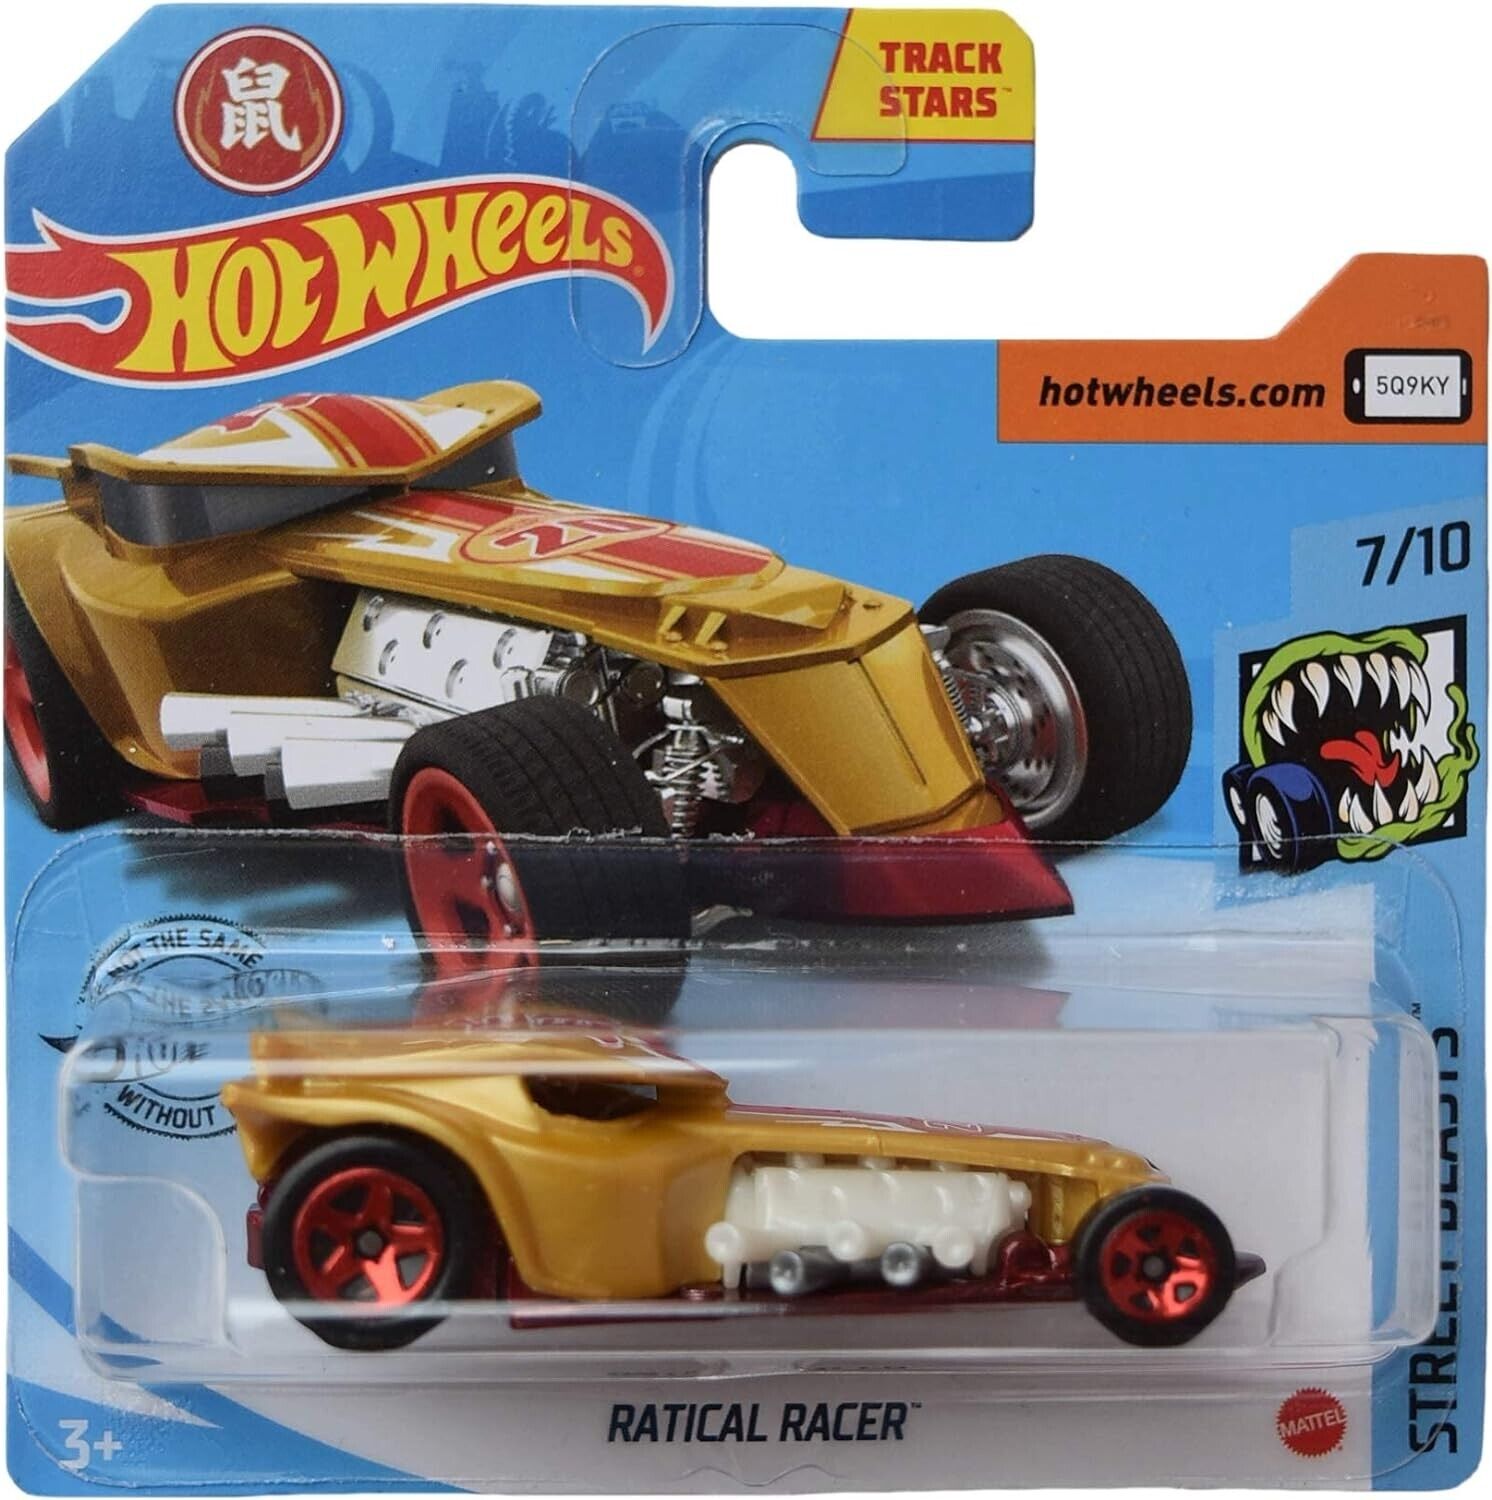 Hot Wheels Ratical Racer, [Gold] Street Beasts 7/10 Short Card 2020